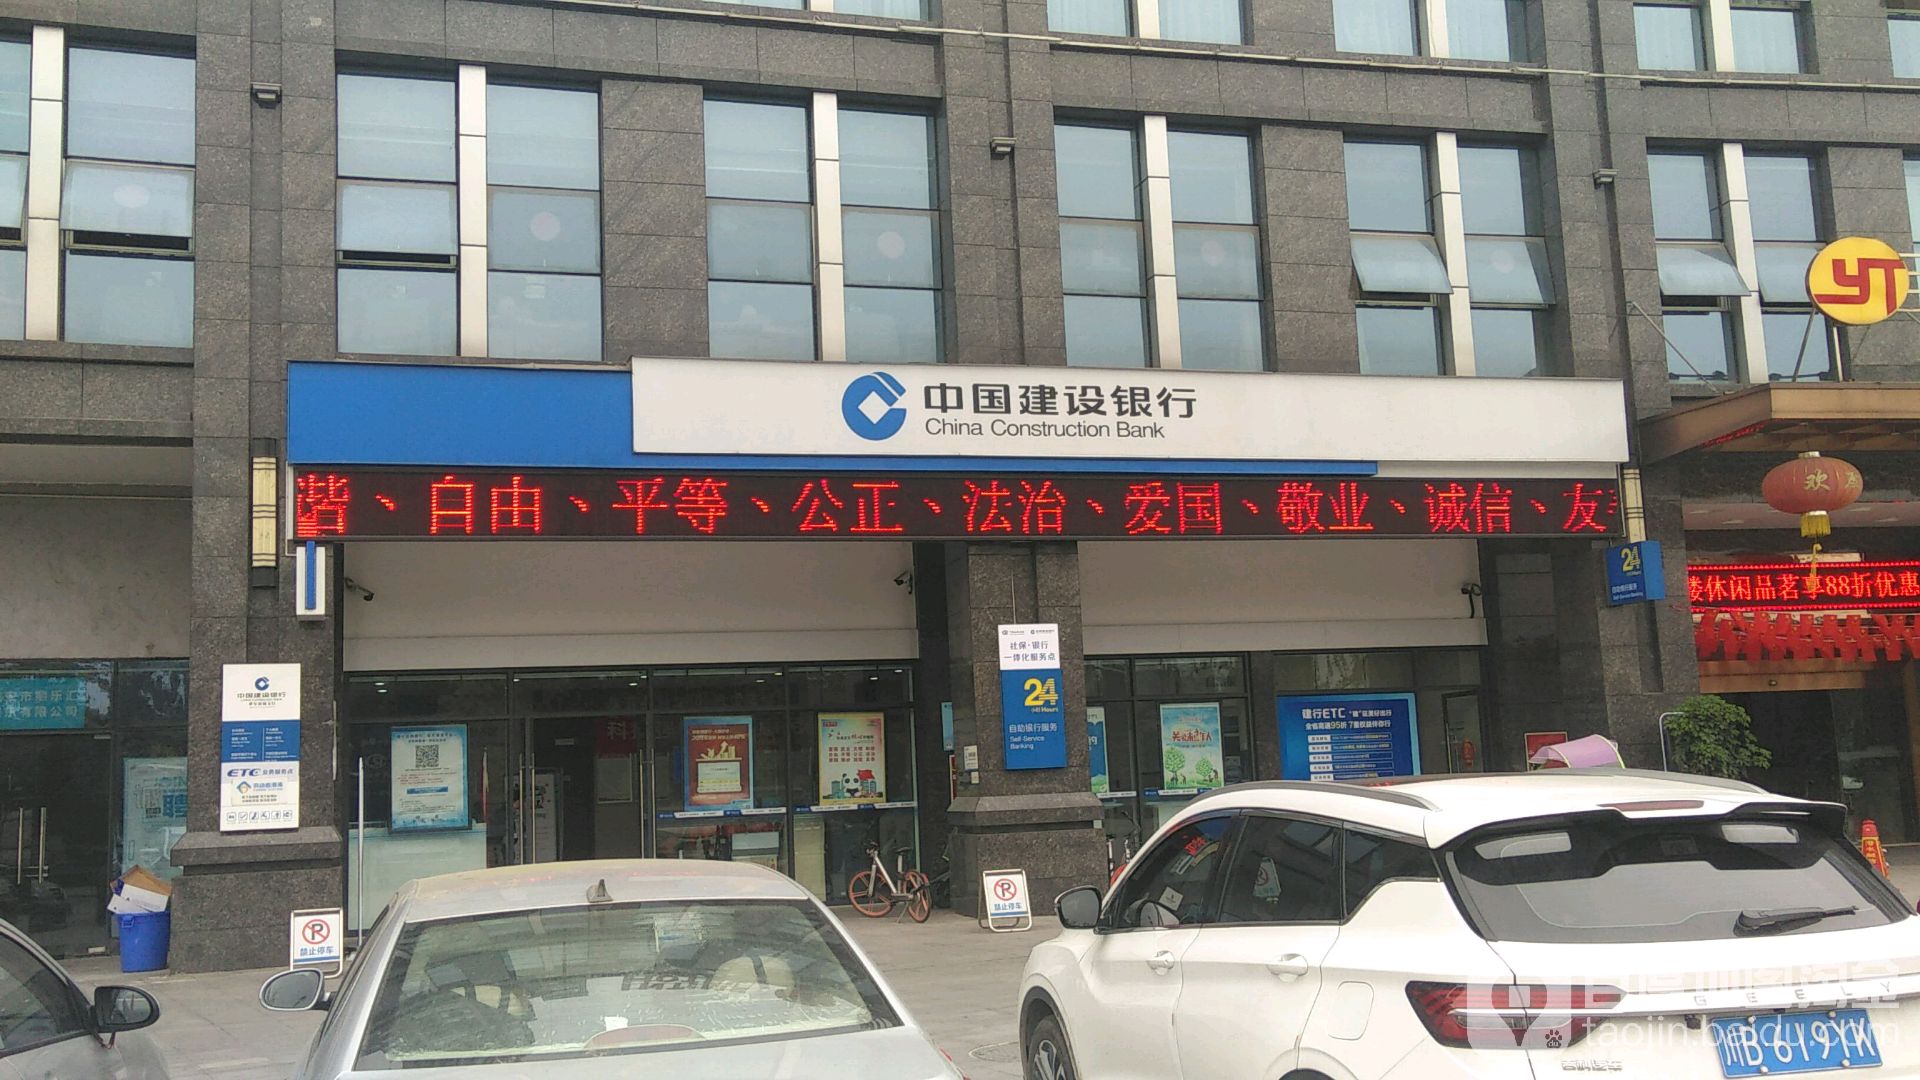 中國銀行建設銀行